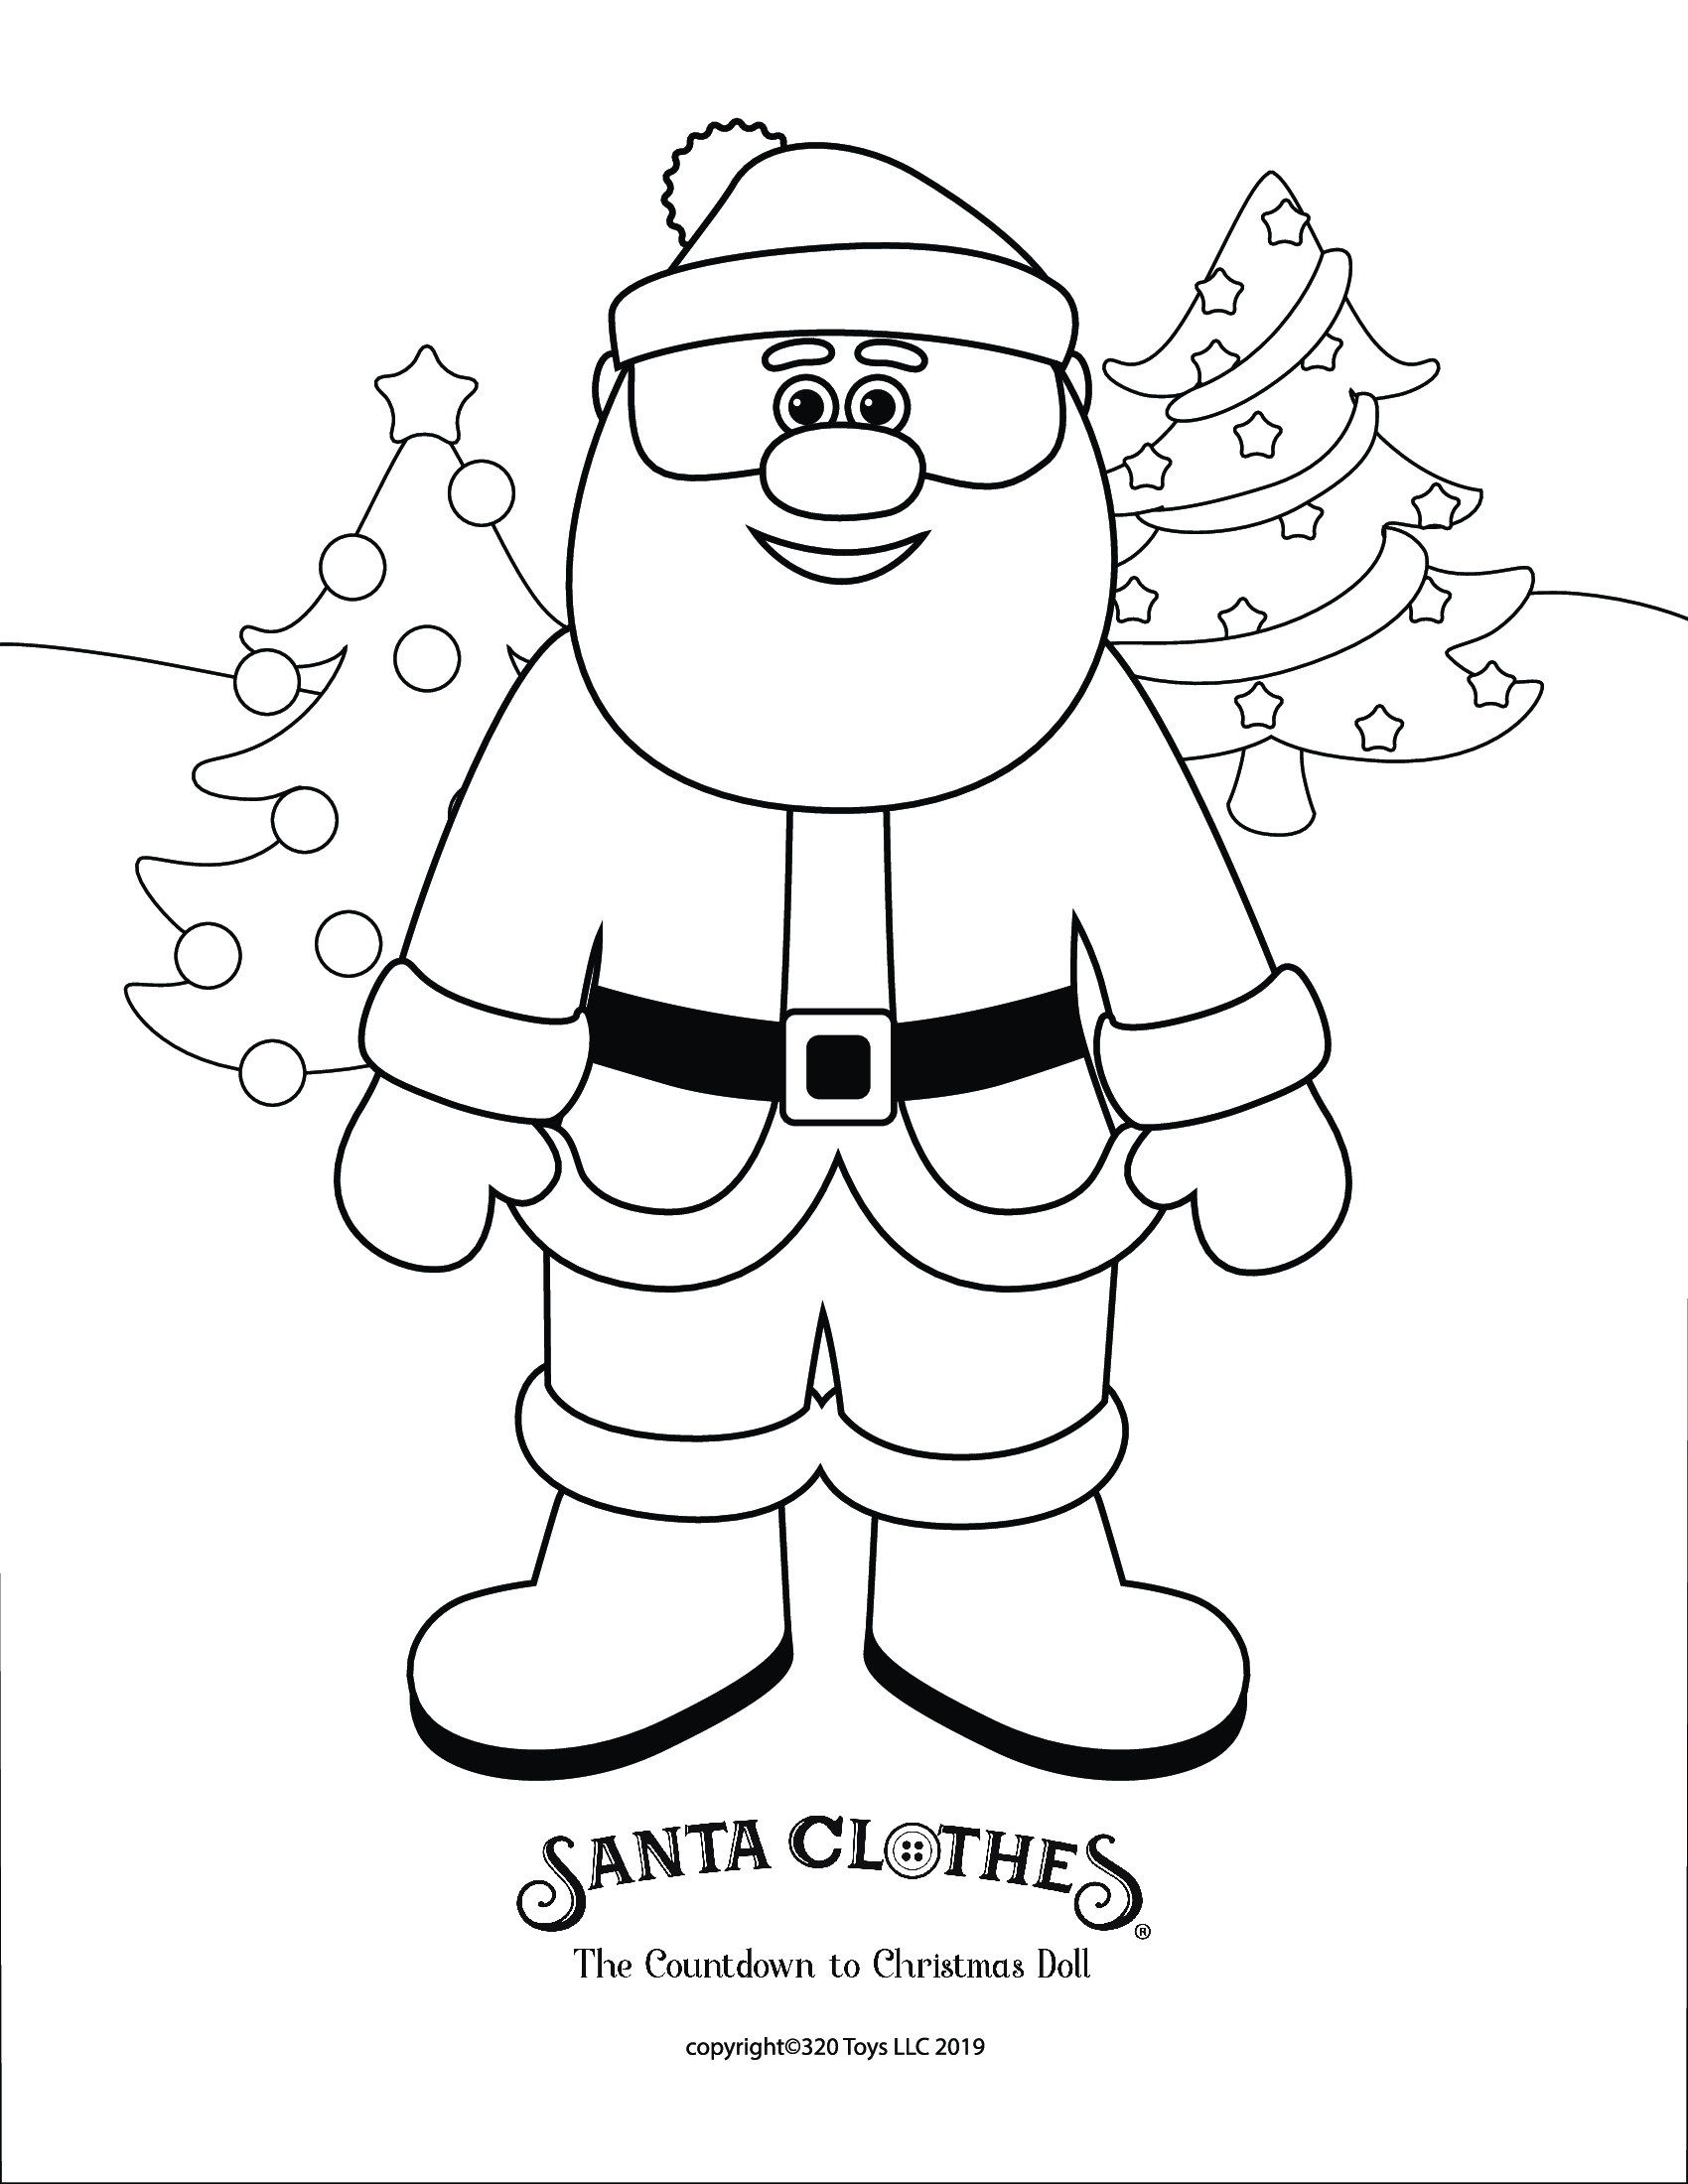 Coloring pages â santa clothes